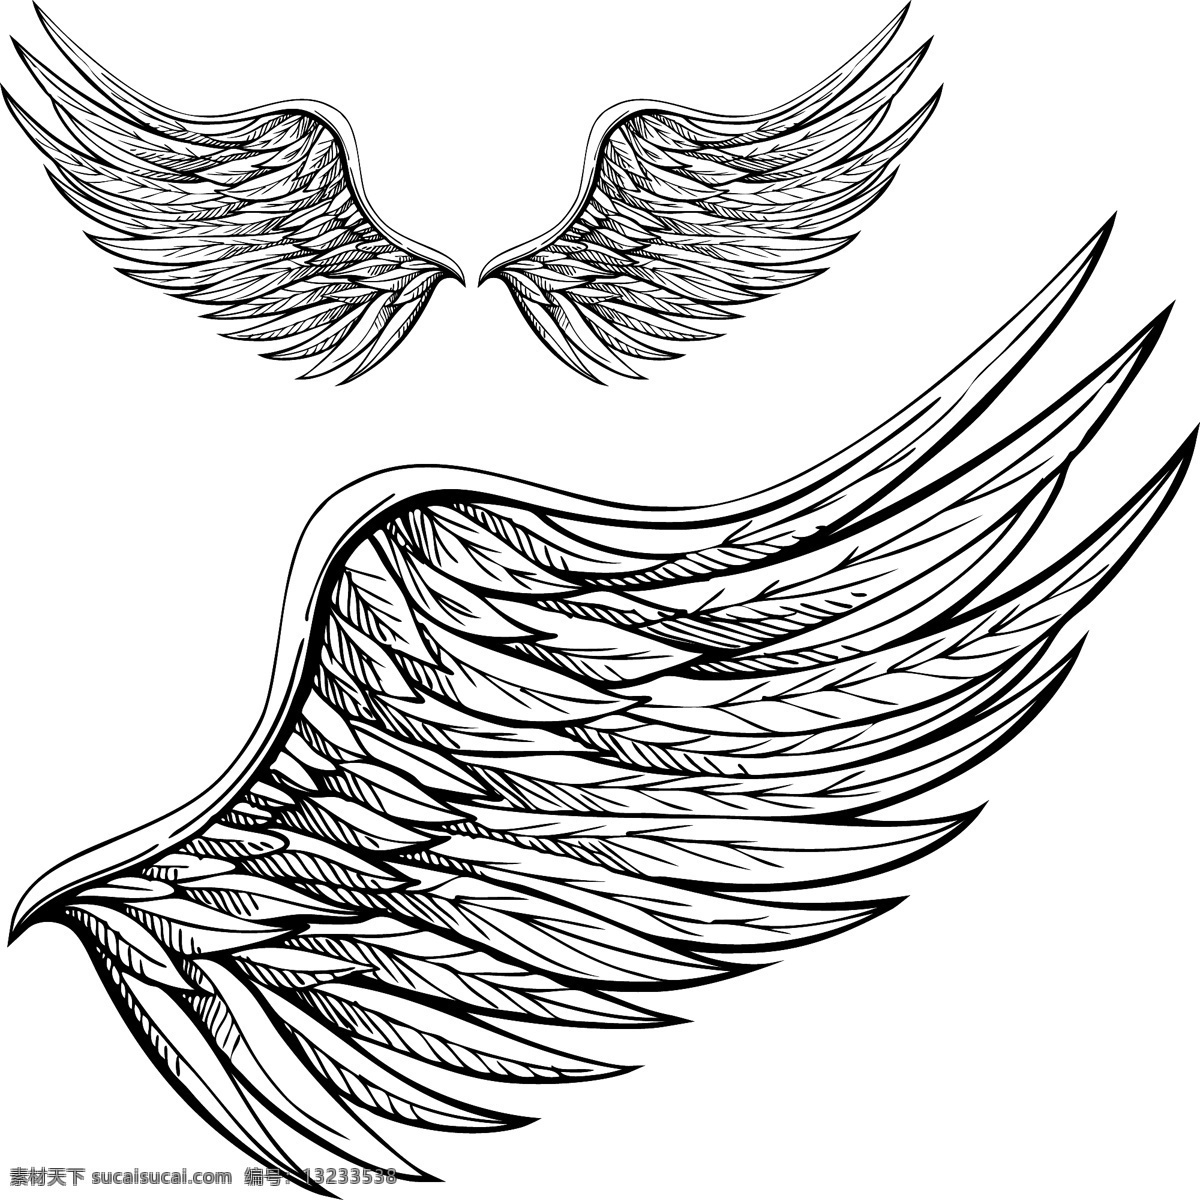 翅膀 天使翅膀 翅膀设计 wing 恶魔翅膀 宗教 基督教 纹身图案 卡通设计 艺术设计 西方宗教 翅膀矢量 矢量